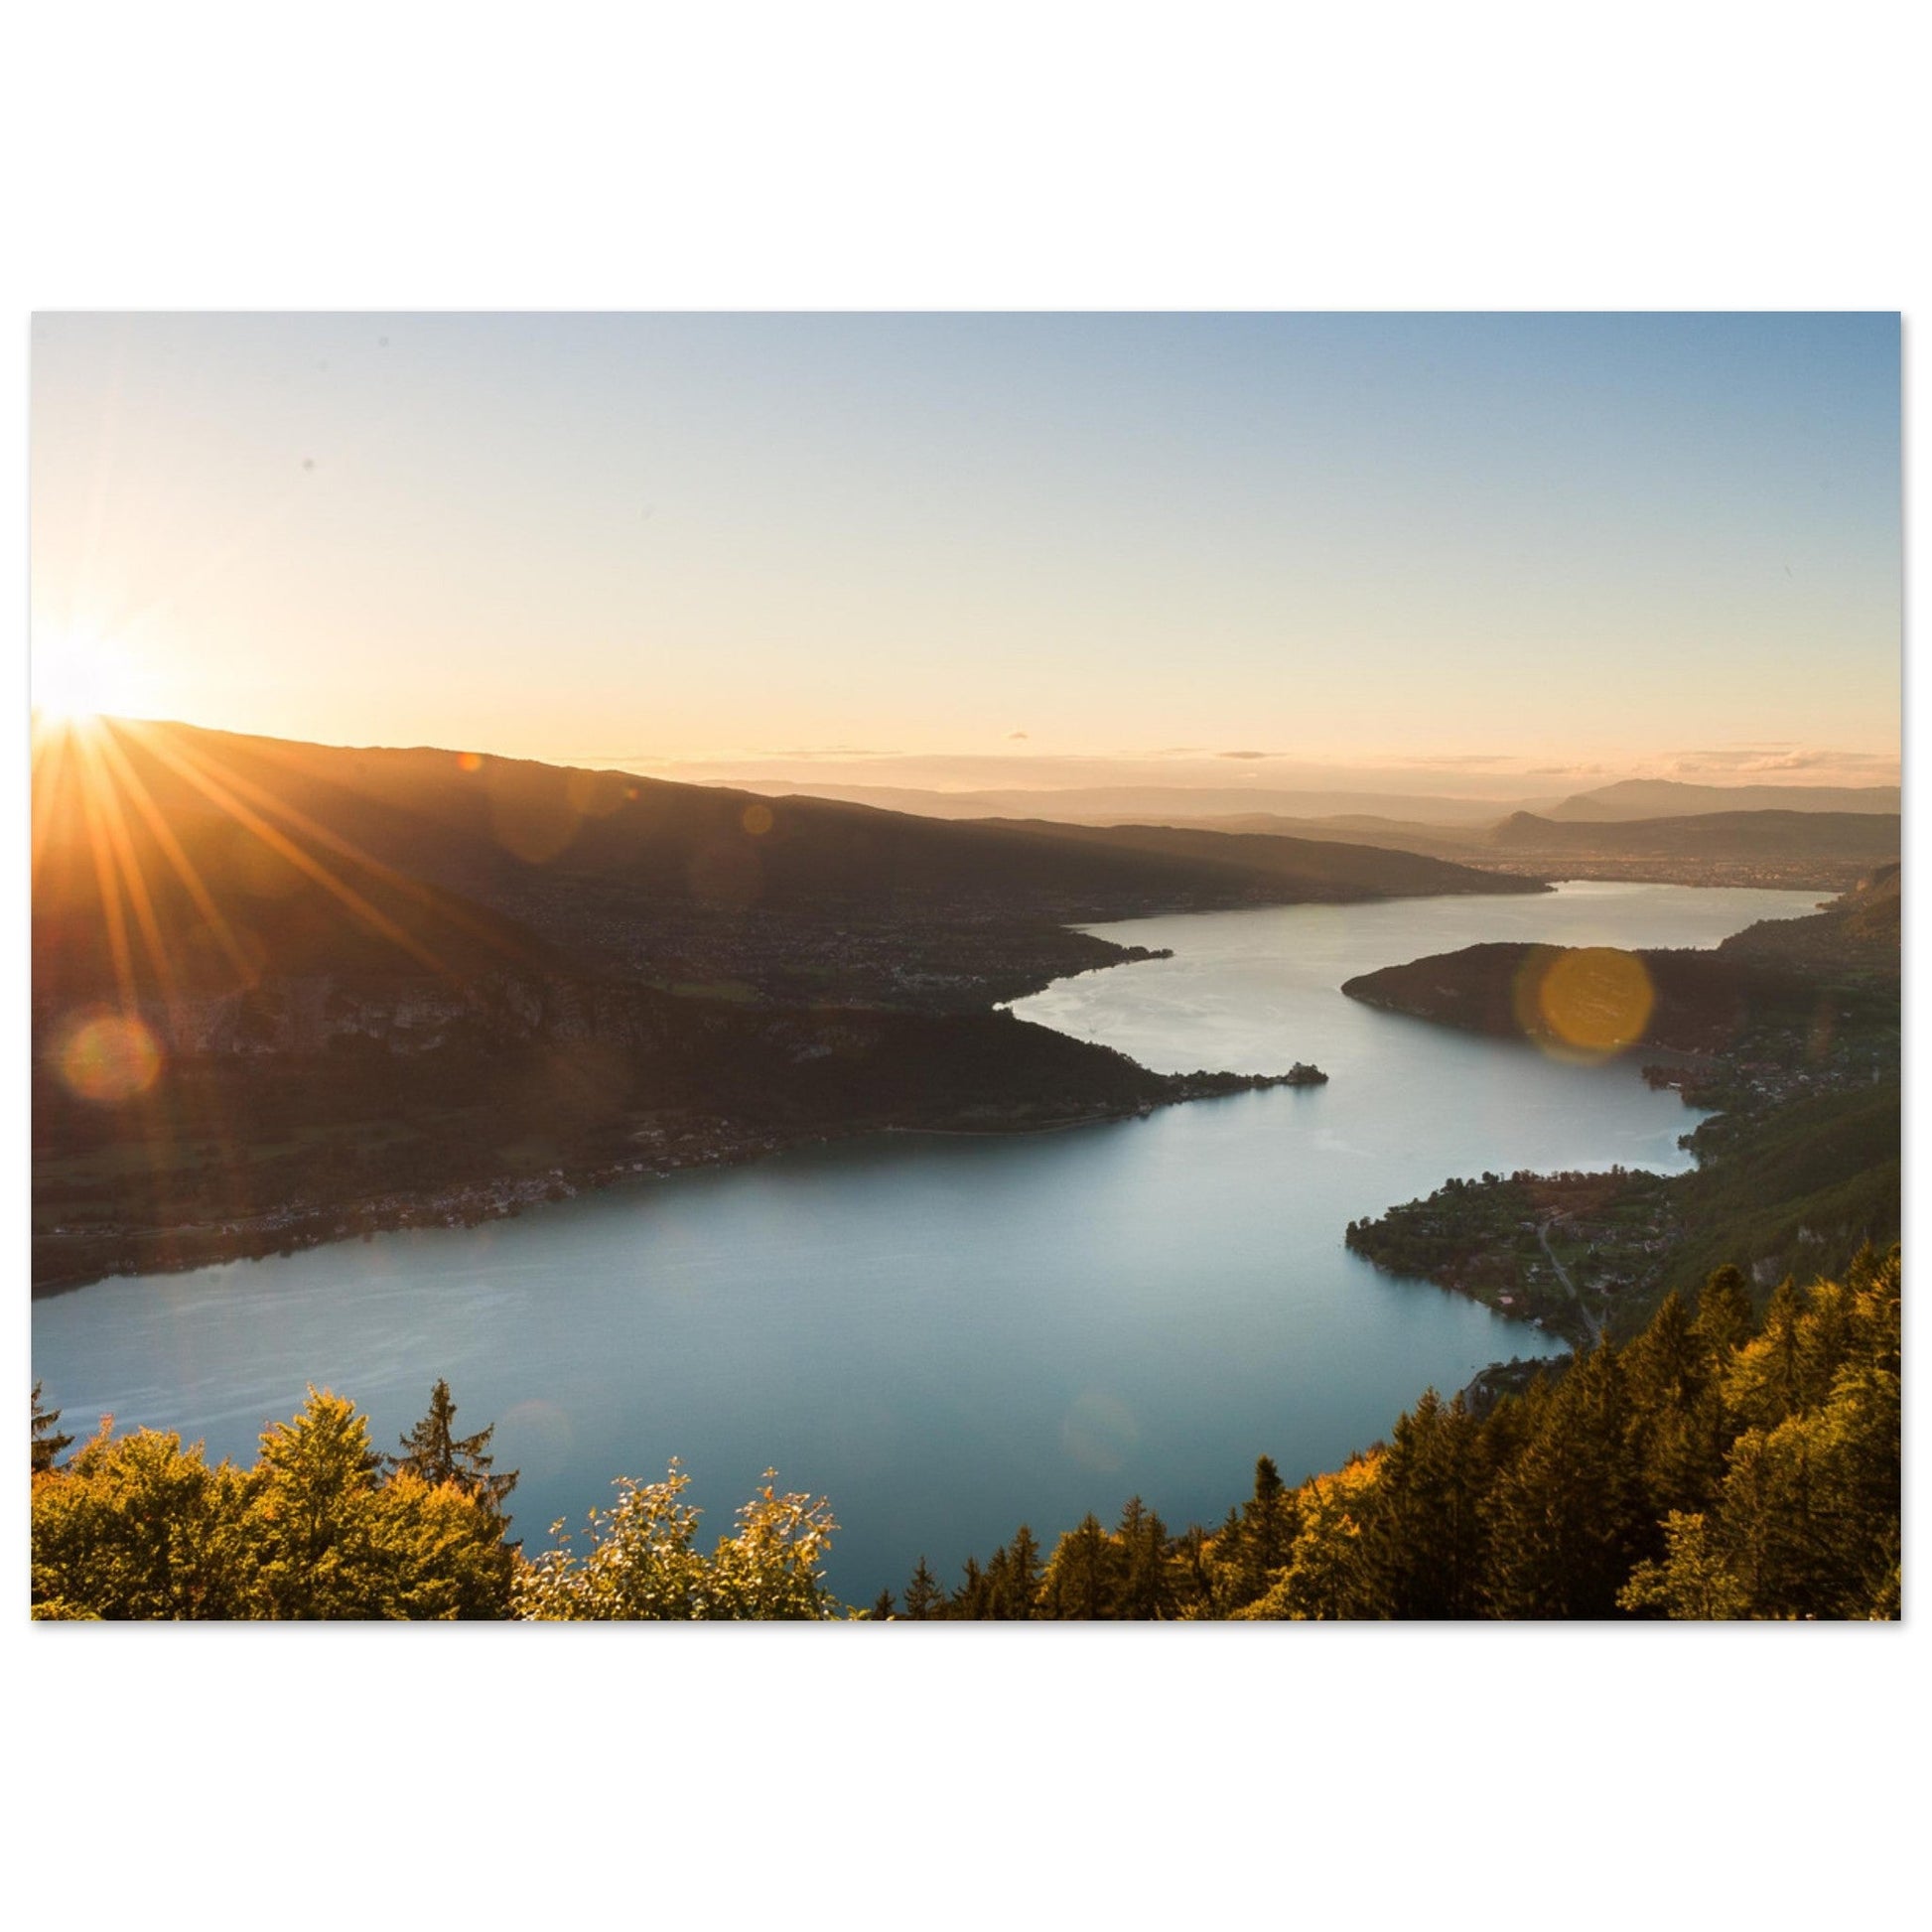 Vente Photo du Lac d'Annecy au coucher du soleil, Col de la Forclaz #3 - Tableau photo paysage